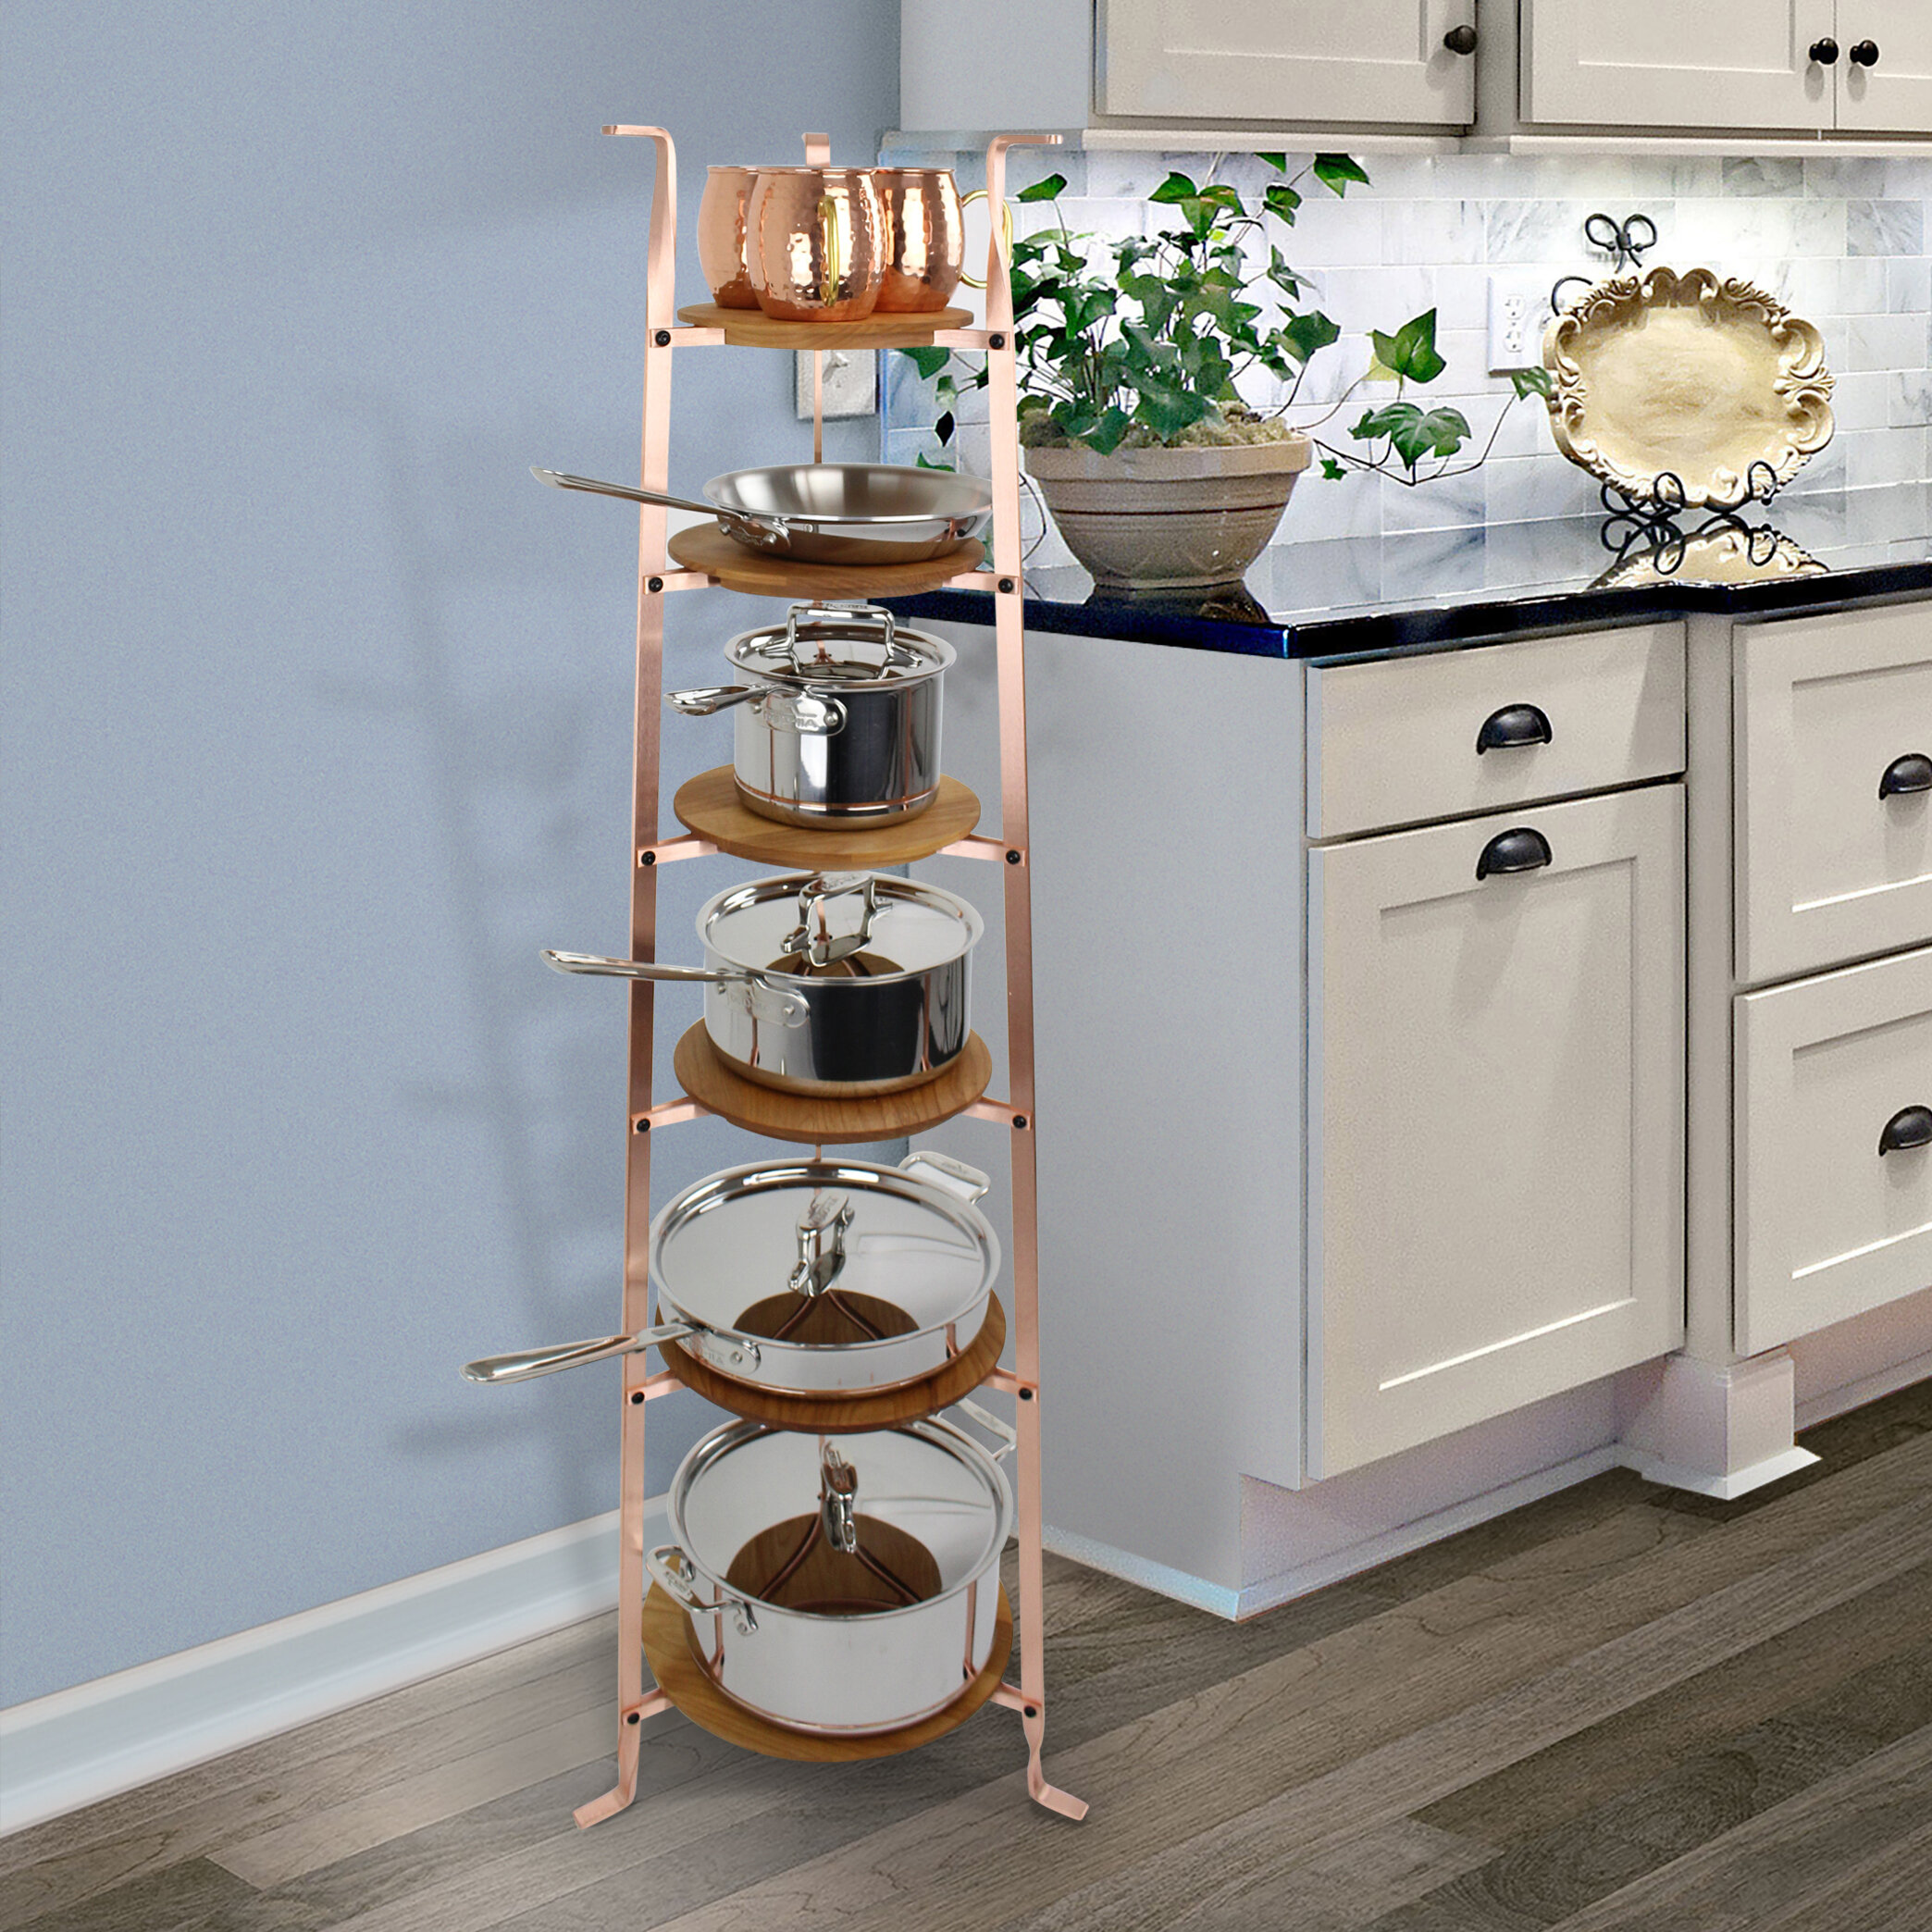 Cookware Stand Free Standing Pot Rack Kitchen Storage Organizer Display 8-Tier